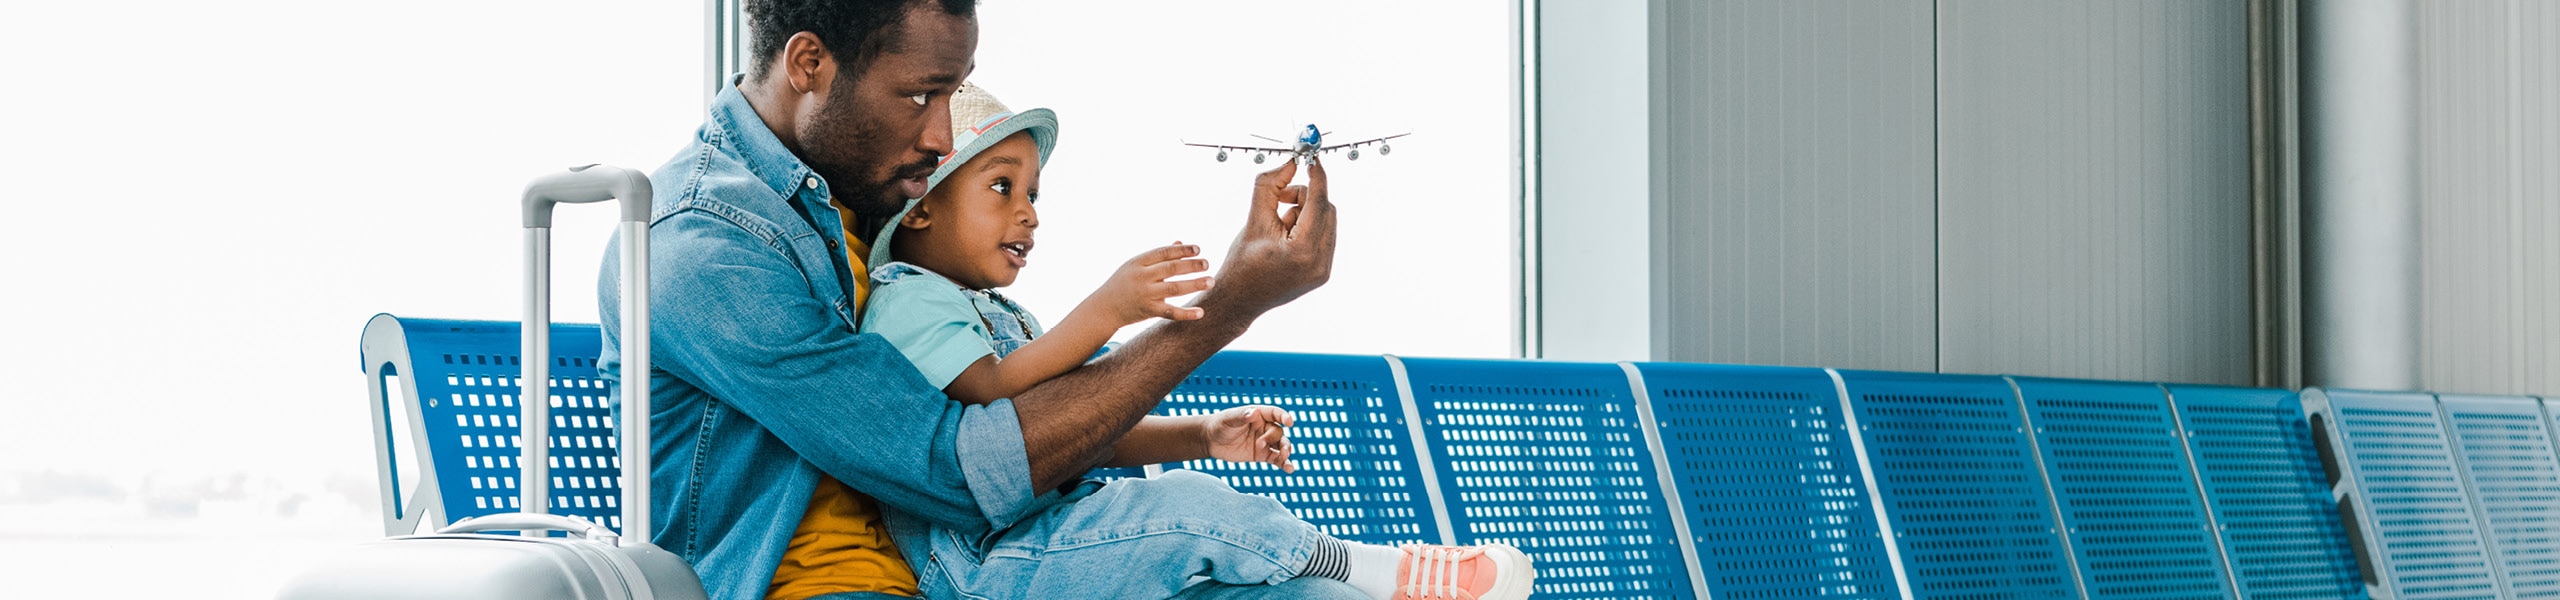 Padre sosteniendo a su hijo pequeño y mostrándole un avión de juguete en el aeropuerto 